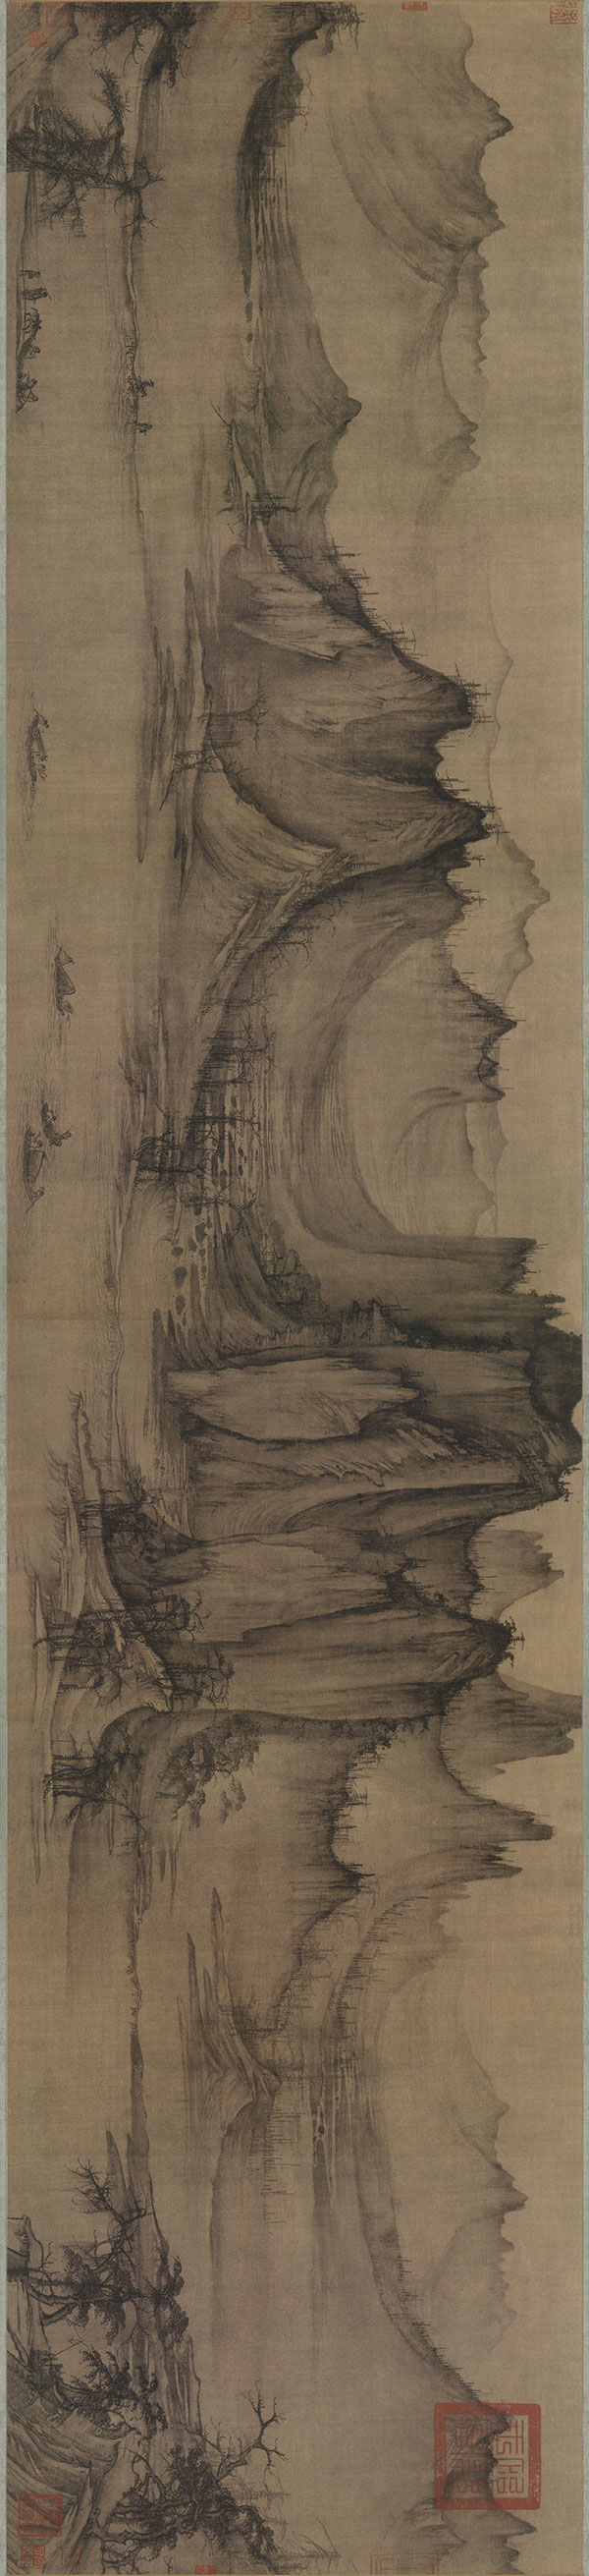 北宋--许道宁-渔父图绢本48.9X209纳尔逊美术馆 竖.jpg